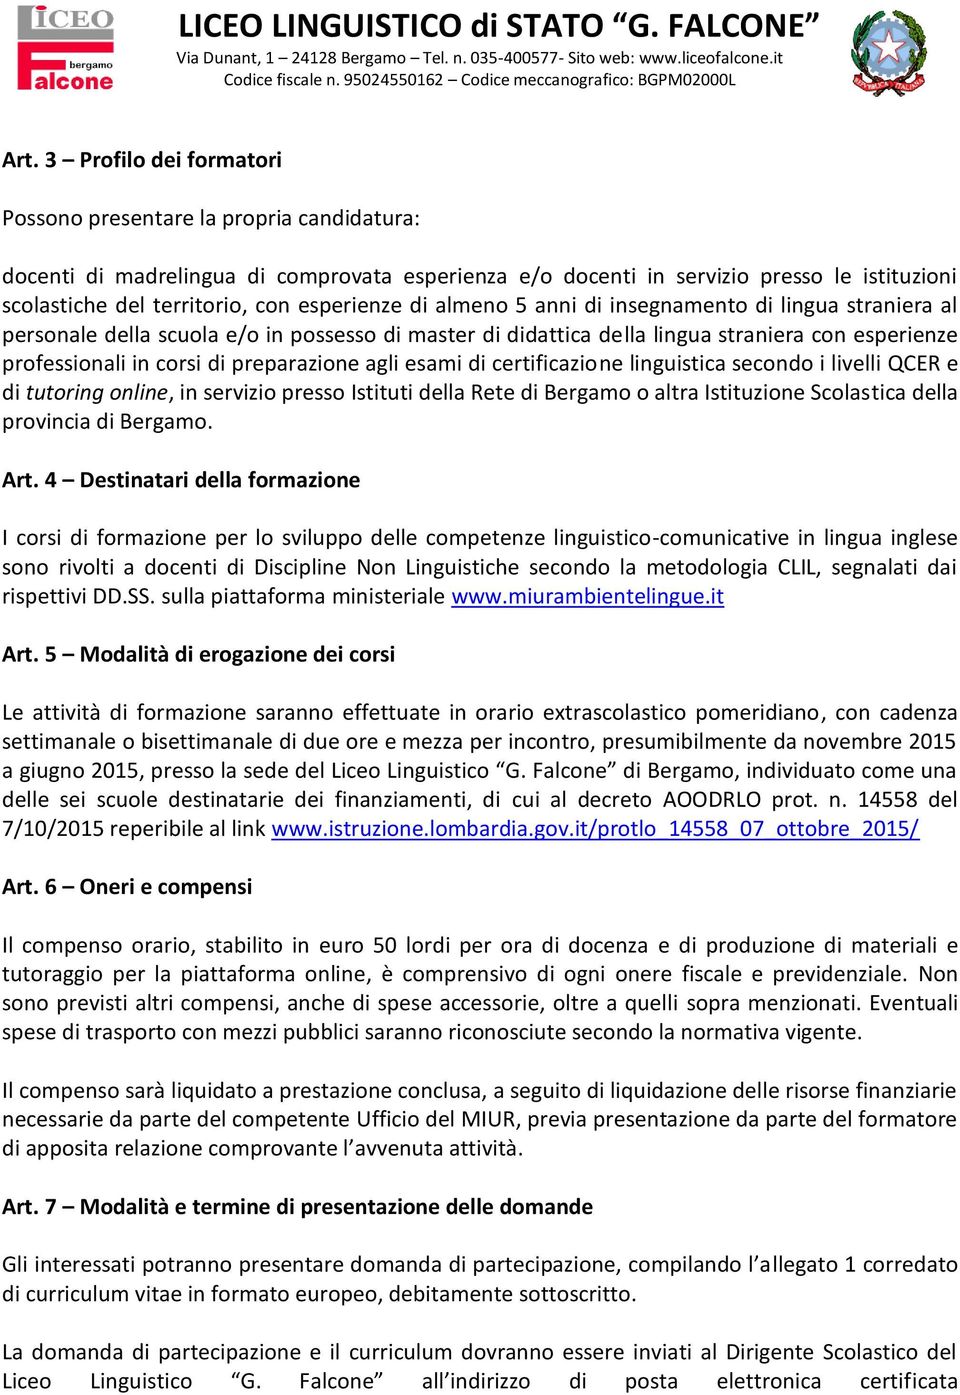 preparazione agli esami di certificazione linguistica secondo i livelli QCER e di tutoring online, in servizio presso Istituti della Rete di Bergamo o altra Istituzione Scolastica della provincia di